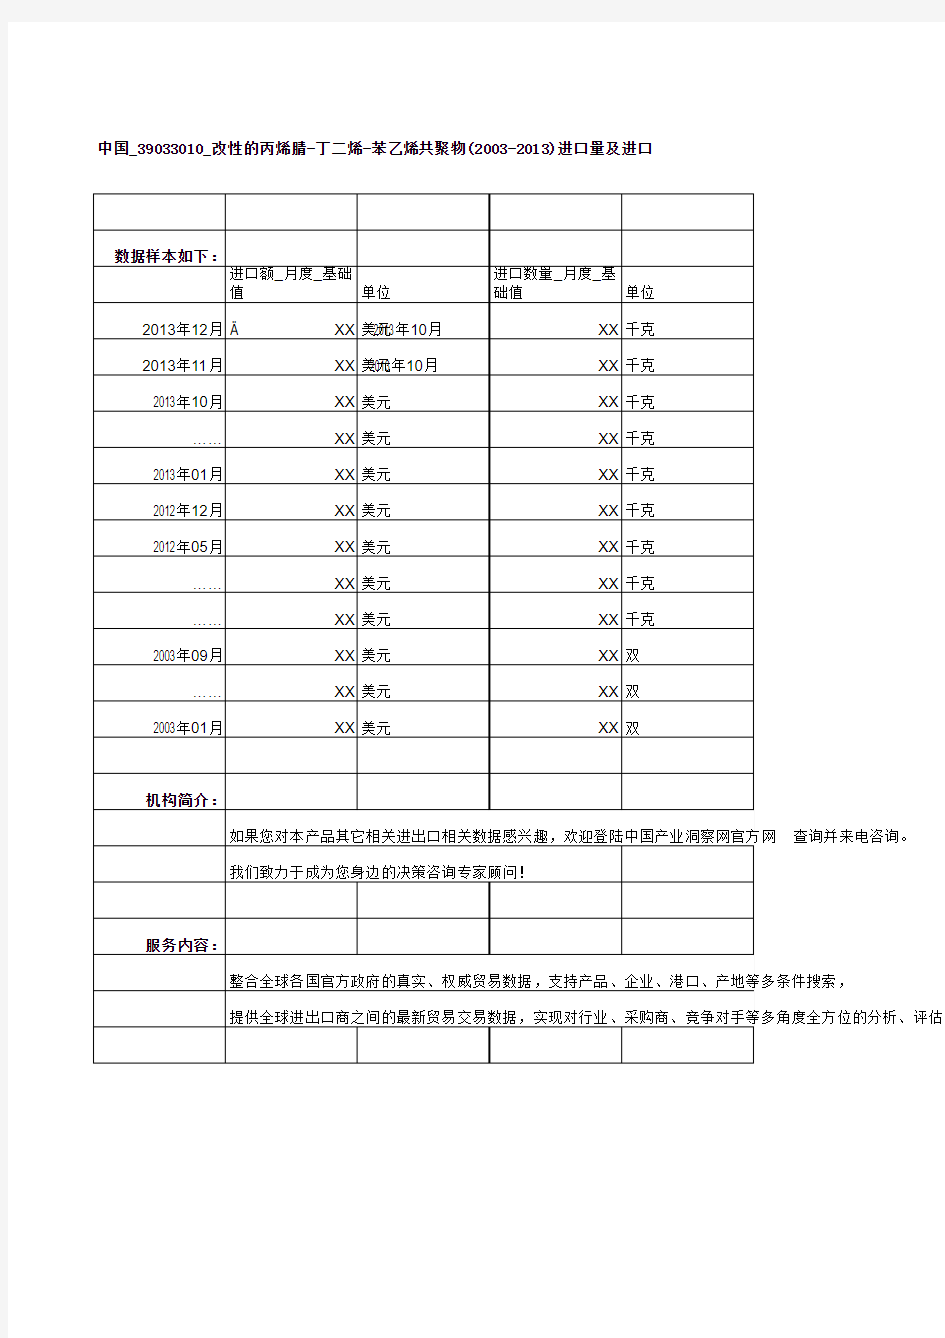 中国_39033010_改性的丙烯腈-丁二烯-苯乙烯共聚物(2003-2013)进口量及进口额